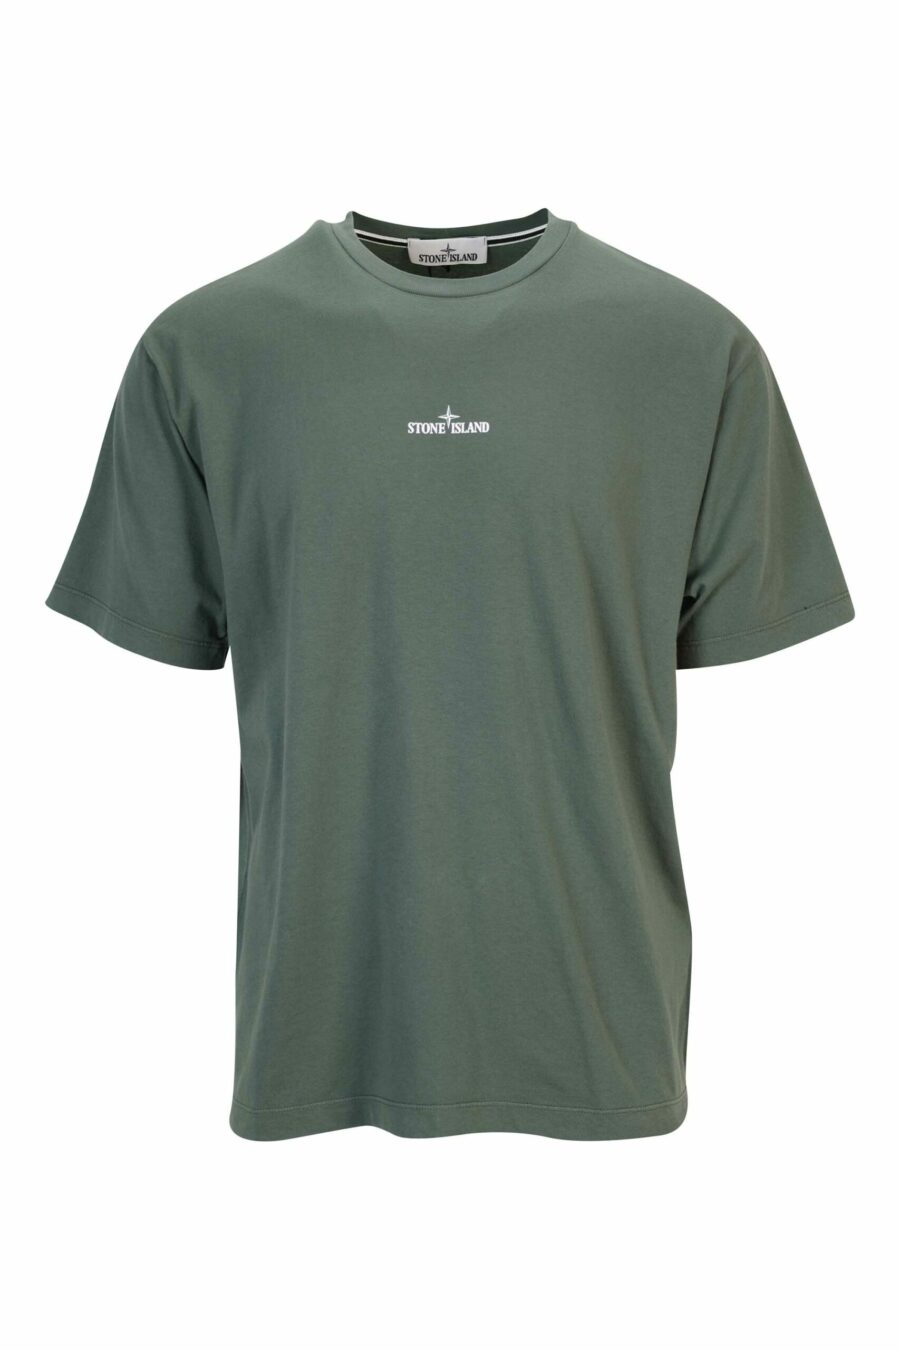 T-shirt vert militaire avec minilogue centré blanc - 8052572928543 scaled